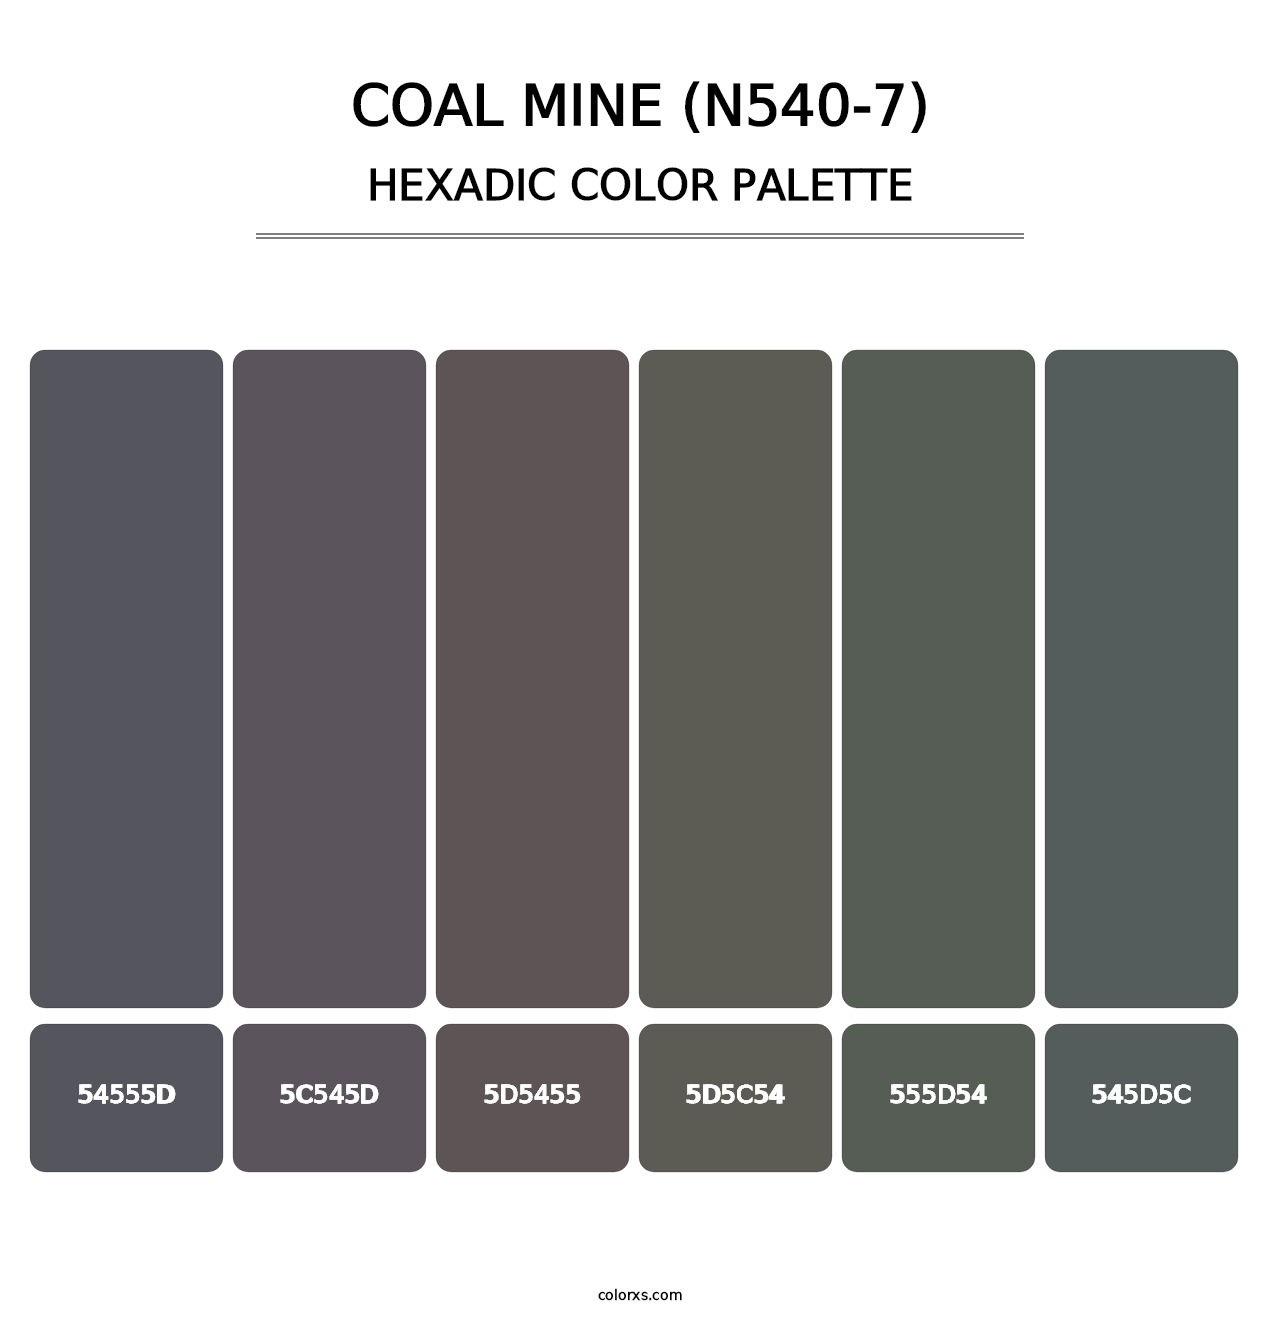 Coal Mine (N540-7) - Hexadic Color Palette